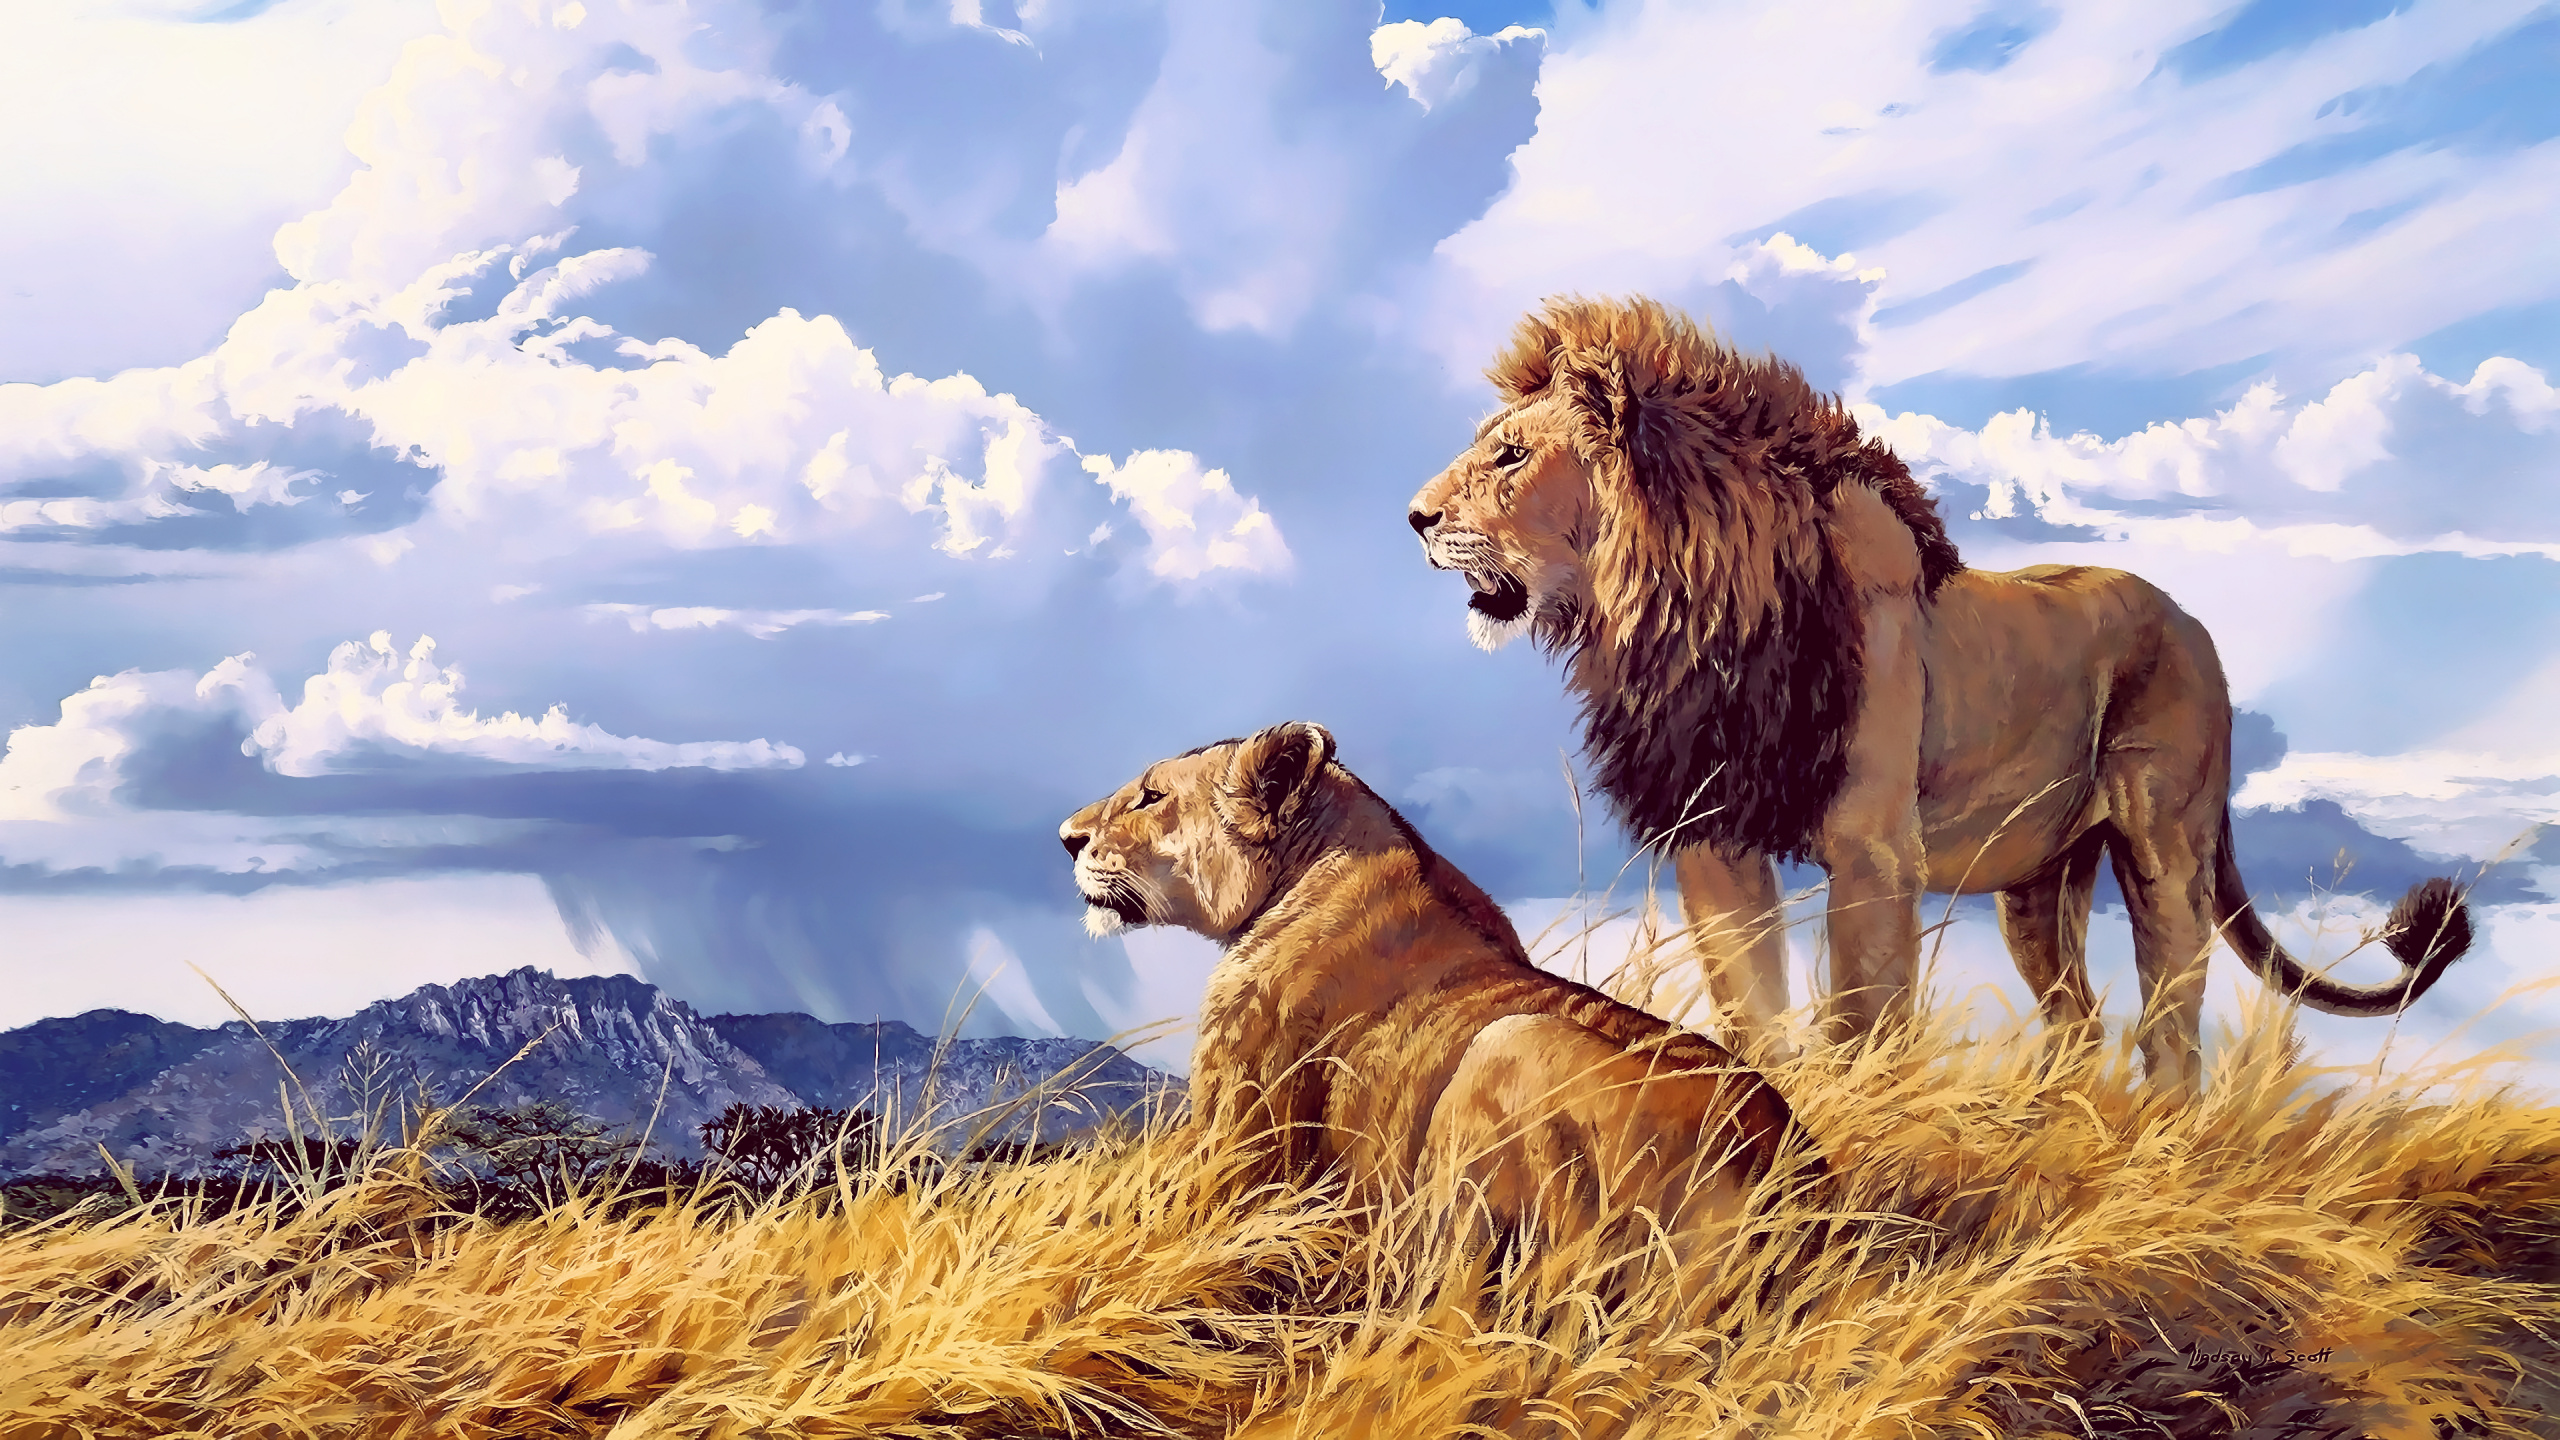 狮子, 老虎, 马赛马的狮子, 野生动物, 猫科 壁纸 2560x1440 允许